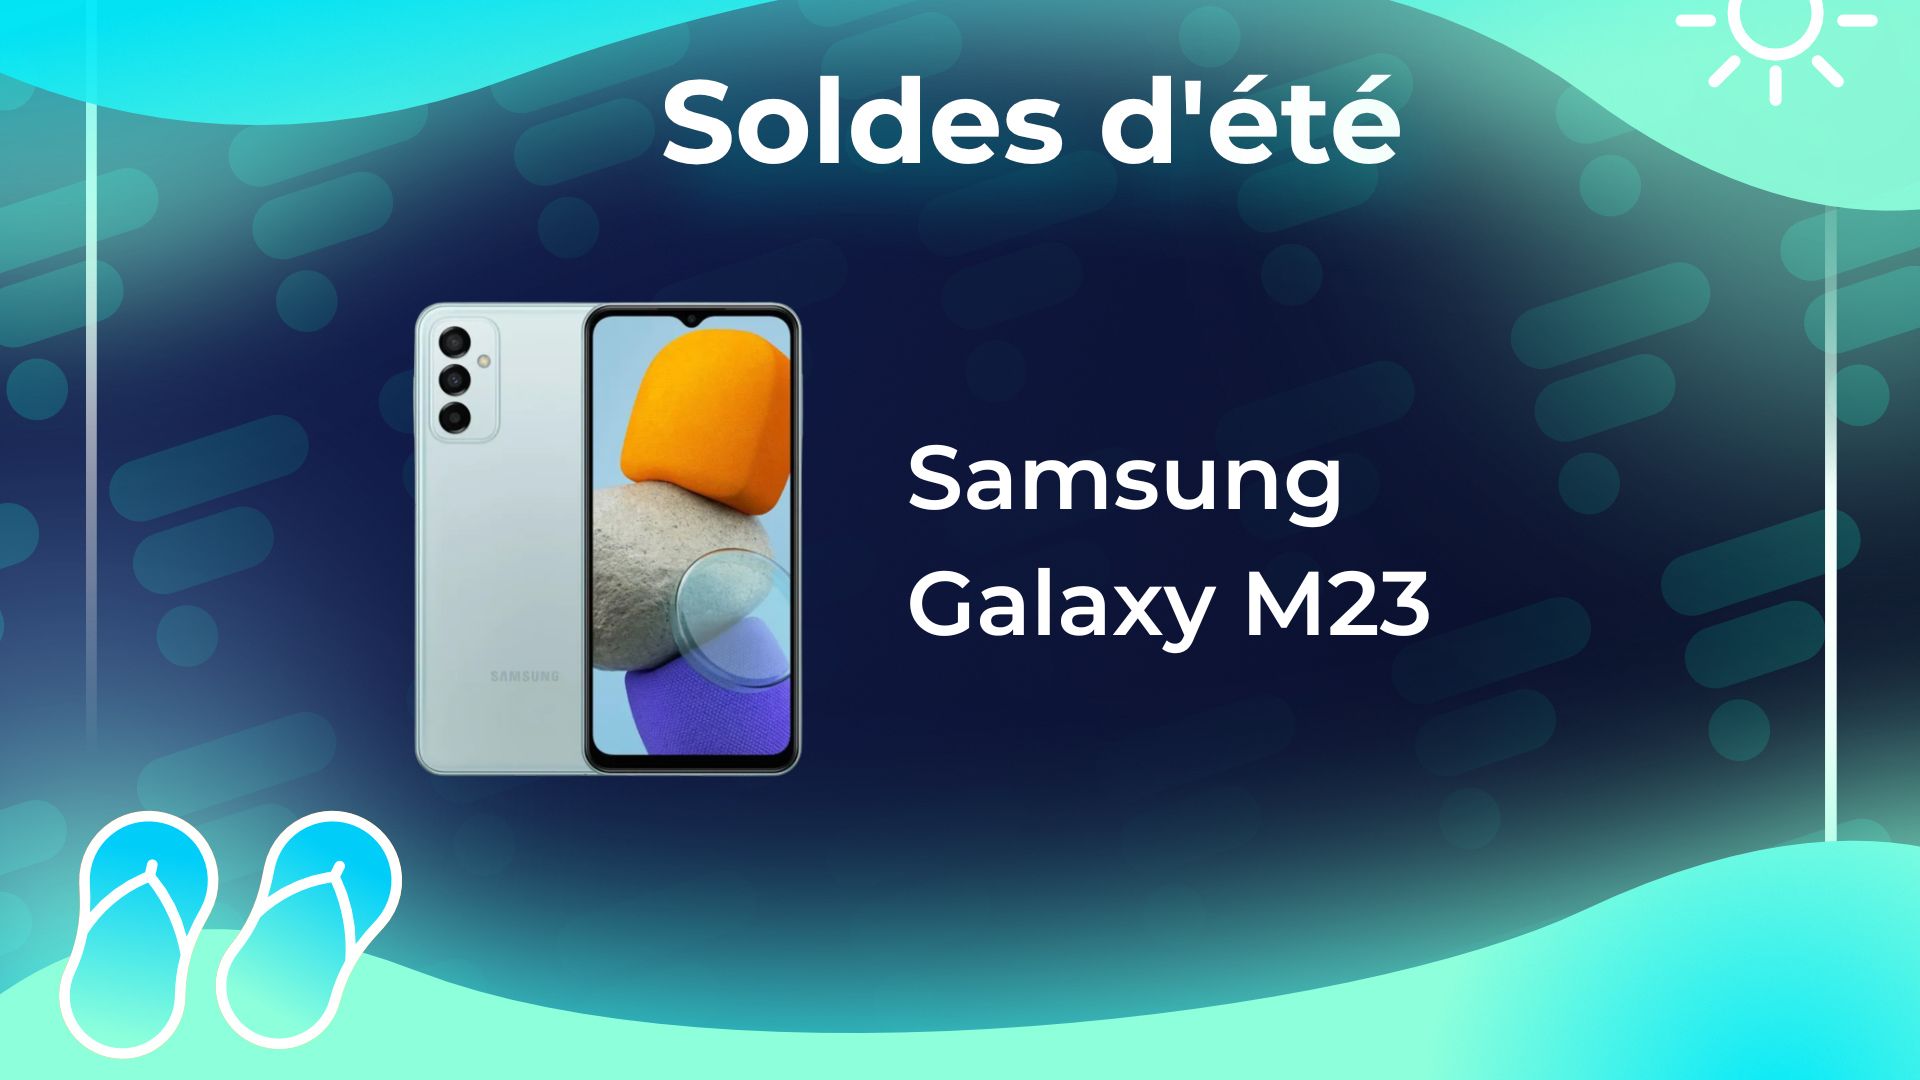 Nouveau prix bas sur le smartphone Samsung Galaxy M23 : il passe sous la  barre des 180 euros - Le Parisien